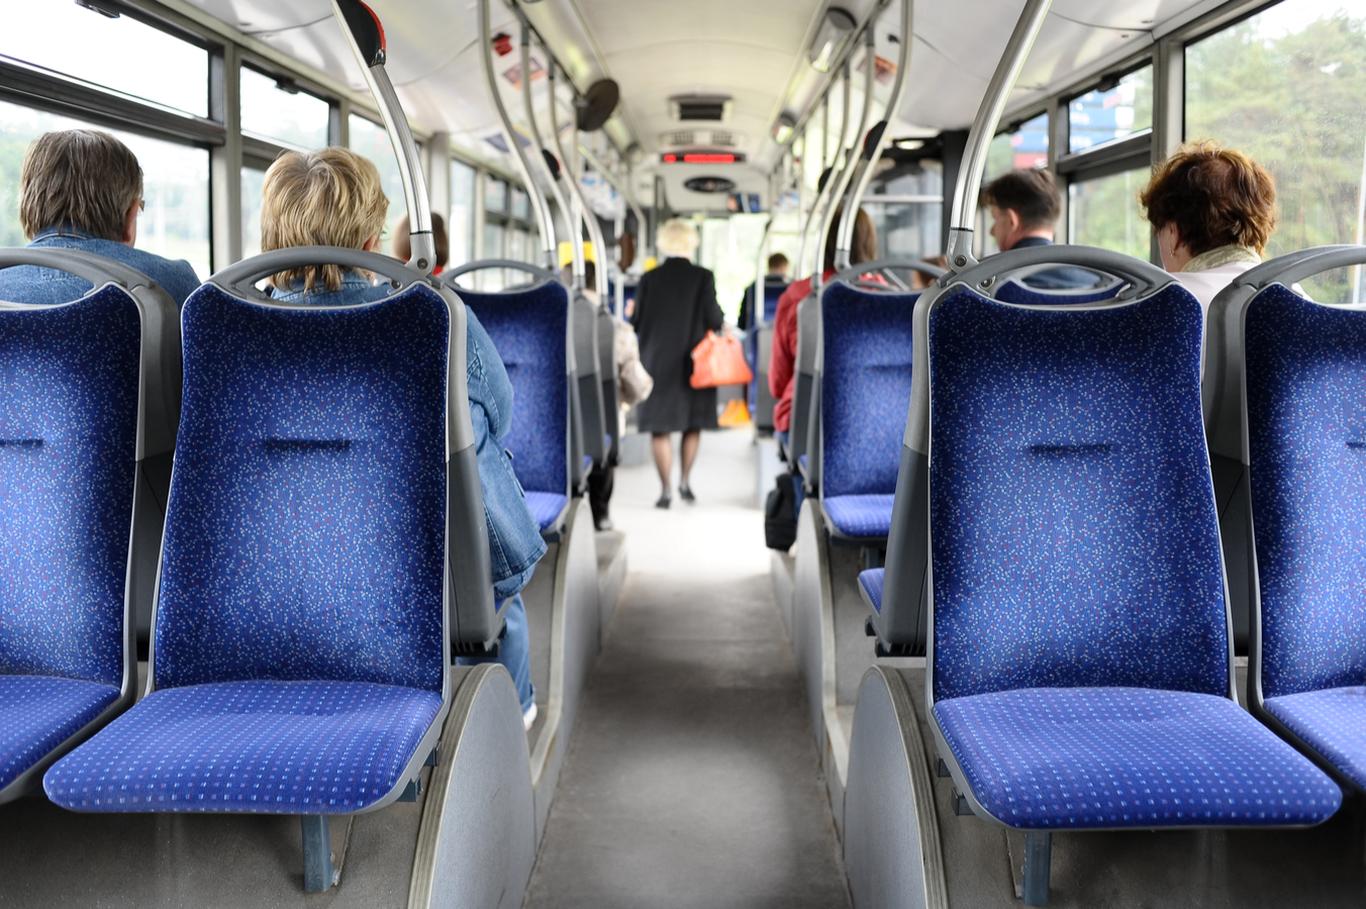 TALLINNA LINNATRANSPORDI AS kuulutas välja riigihanke, millega ostab 100 uut linnaliinibussi, võimalusega osta sama lepingu raames veel lisaks 100 bussi. Hankel